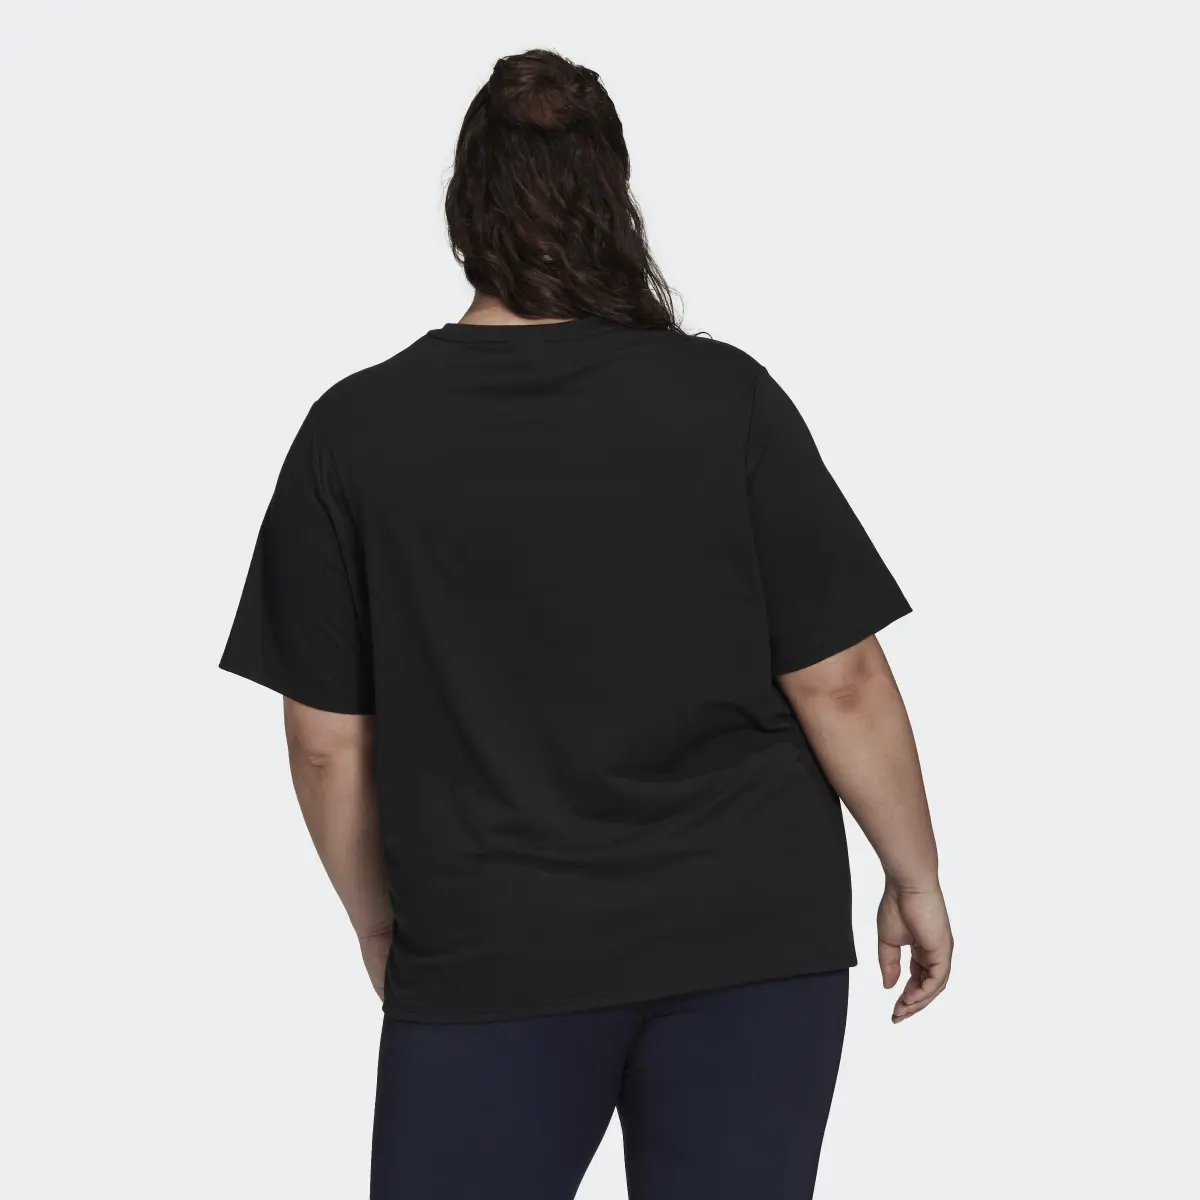 Adidas Train Icons 3-Streifen T-Shirt – Große Größen. 3